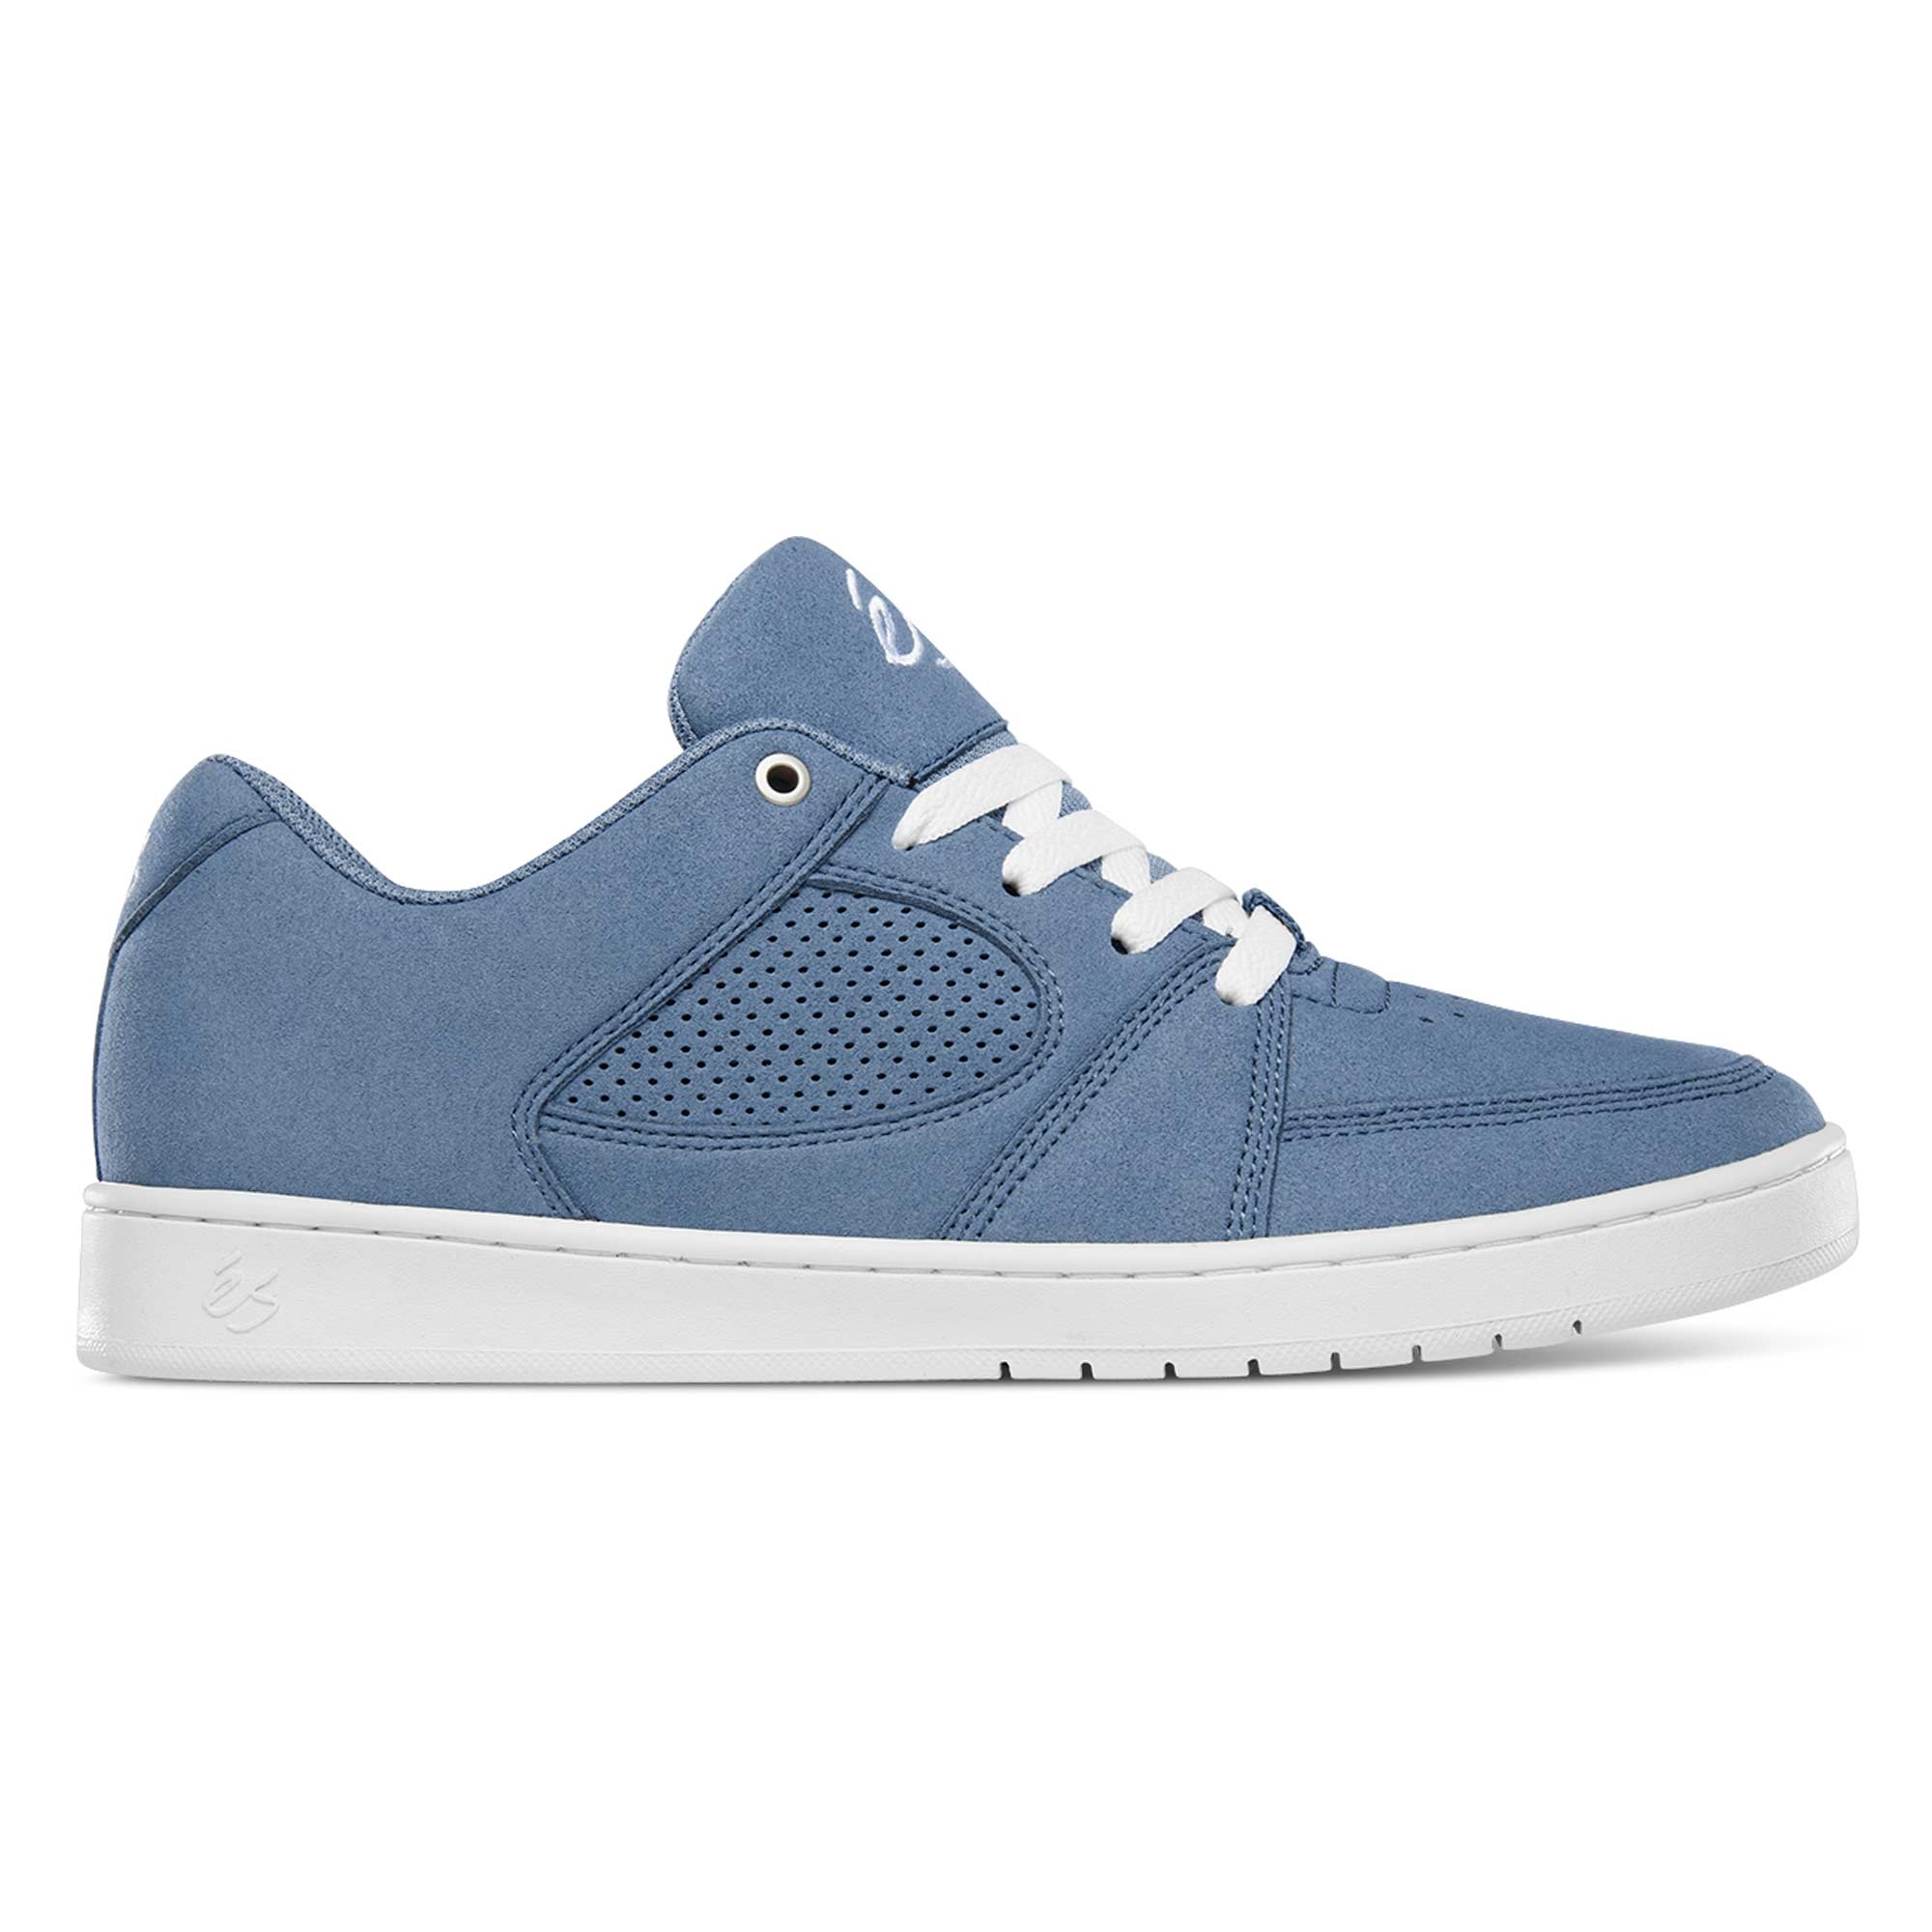 eS SKB Shoe ACCEL SLIM blu/gry/whi blue/gey/white